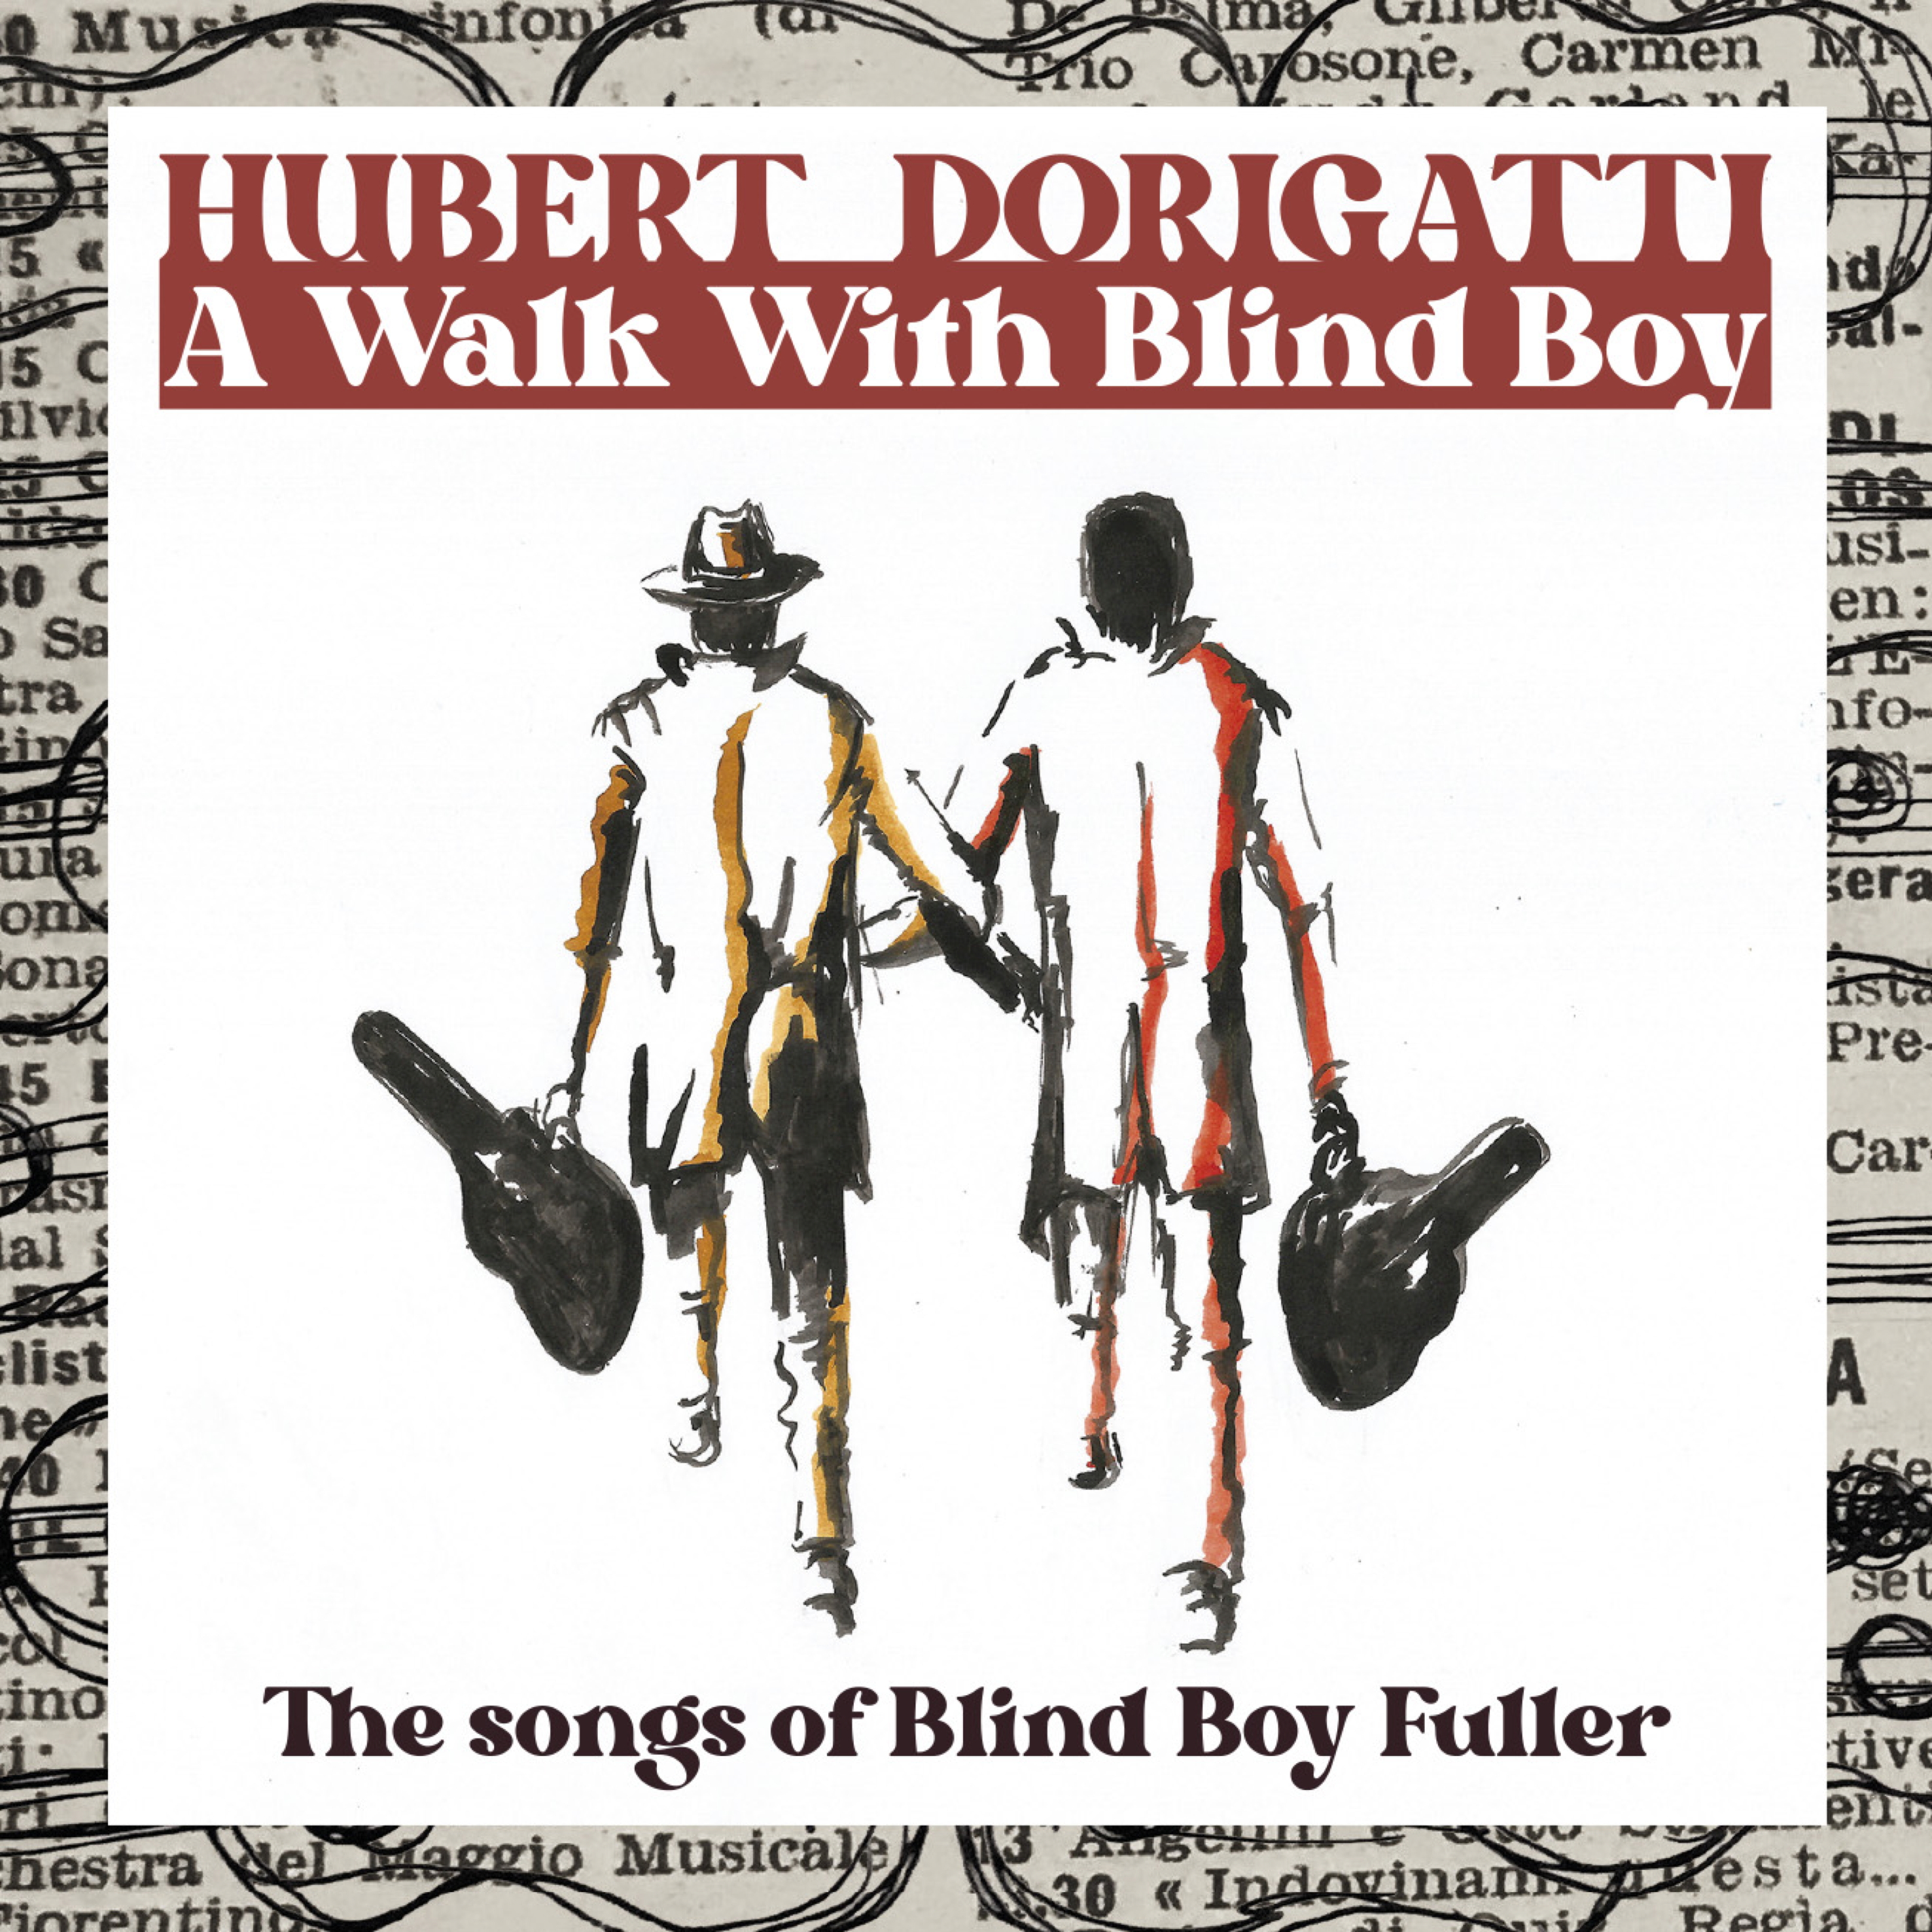 Elf von den zwölf Songs der CD stammen aus der Feder des Blues-Pioniers Blind Boy Fuller: „A Walk With Blind Boy” von Hubert Dorigatti ist am 23. April 2022 erschienen.